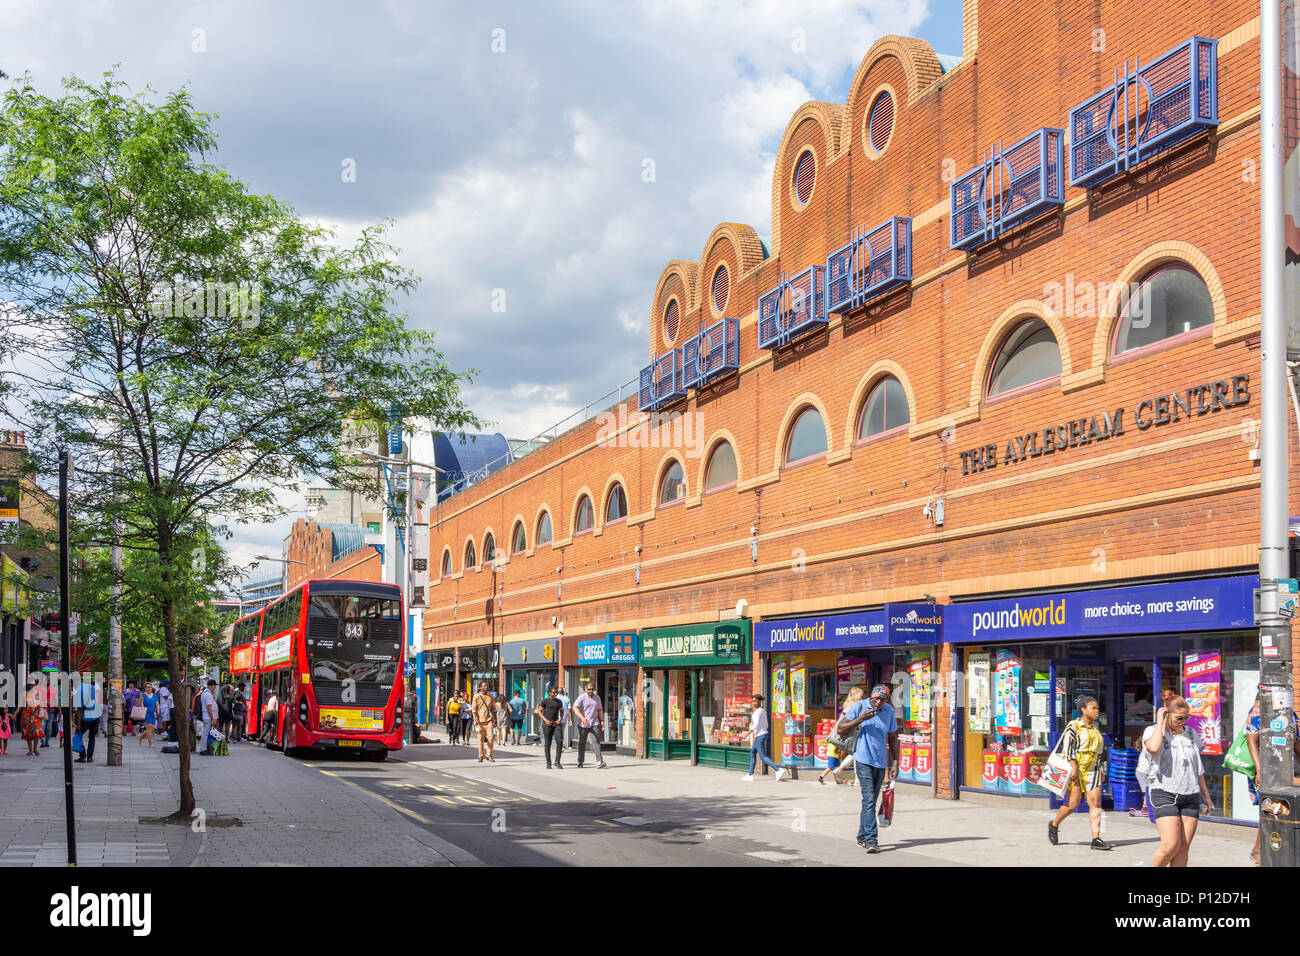 The Aylesham Centre, Rye Lane, Peckham, The London Borough of Southwark, Greater London, England, United Kingdom Stock Photo